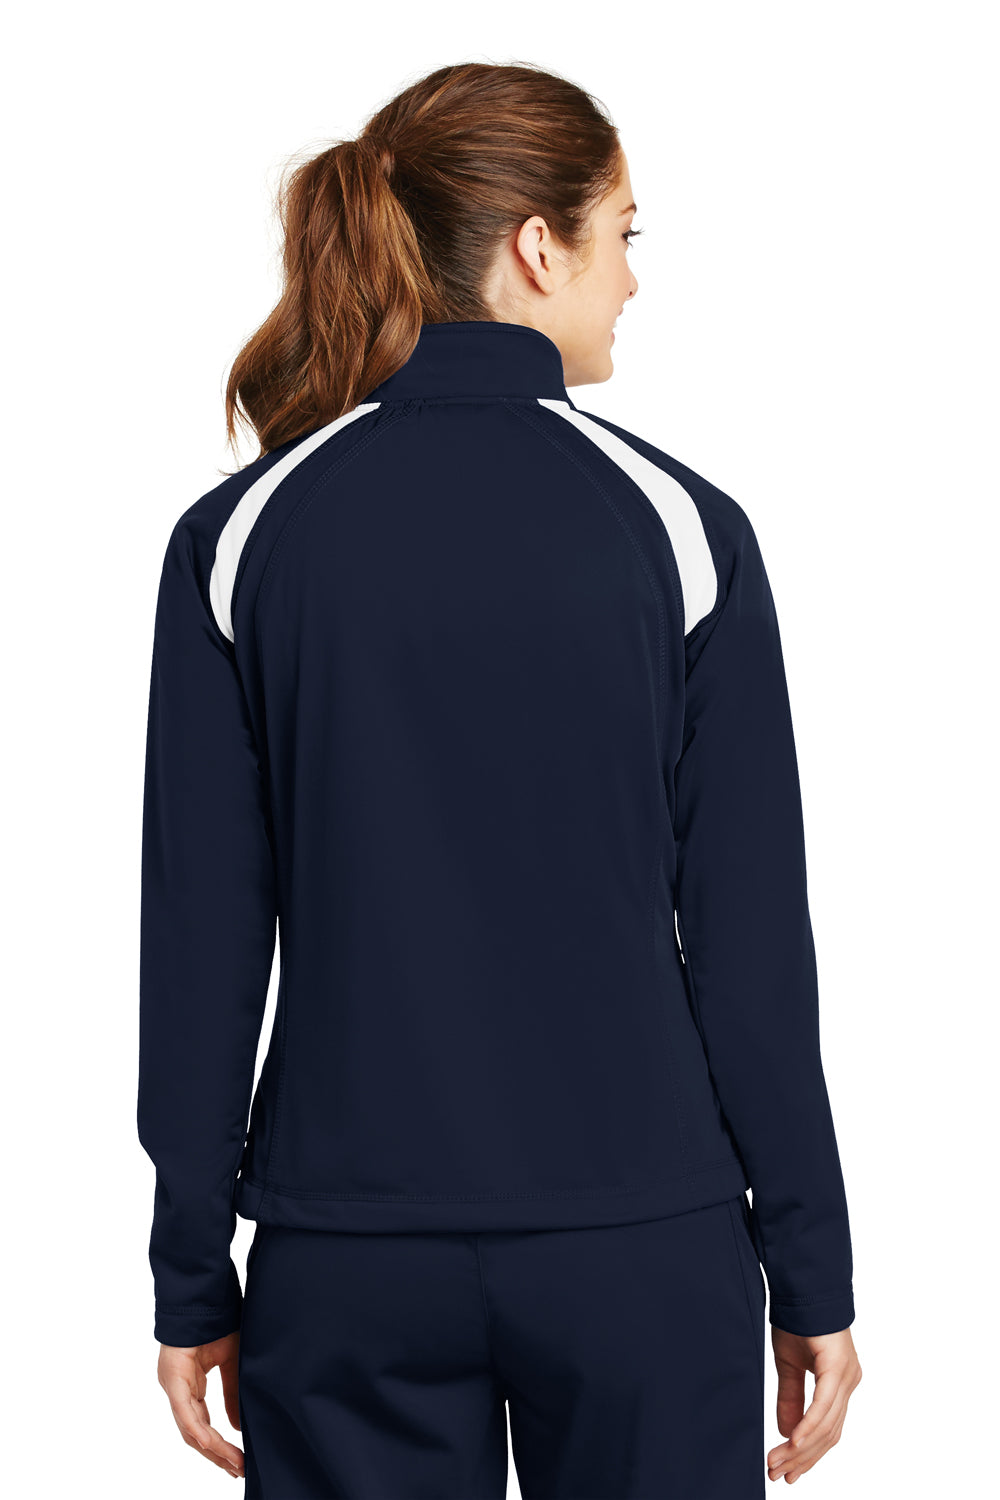 Sport-Tek LST90 Womens Full Zip Track Jacket Navy Blue Back